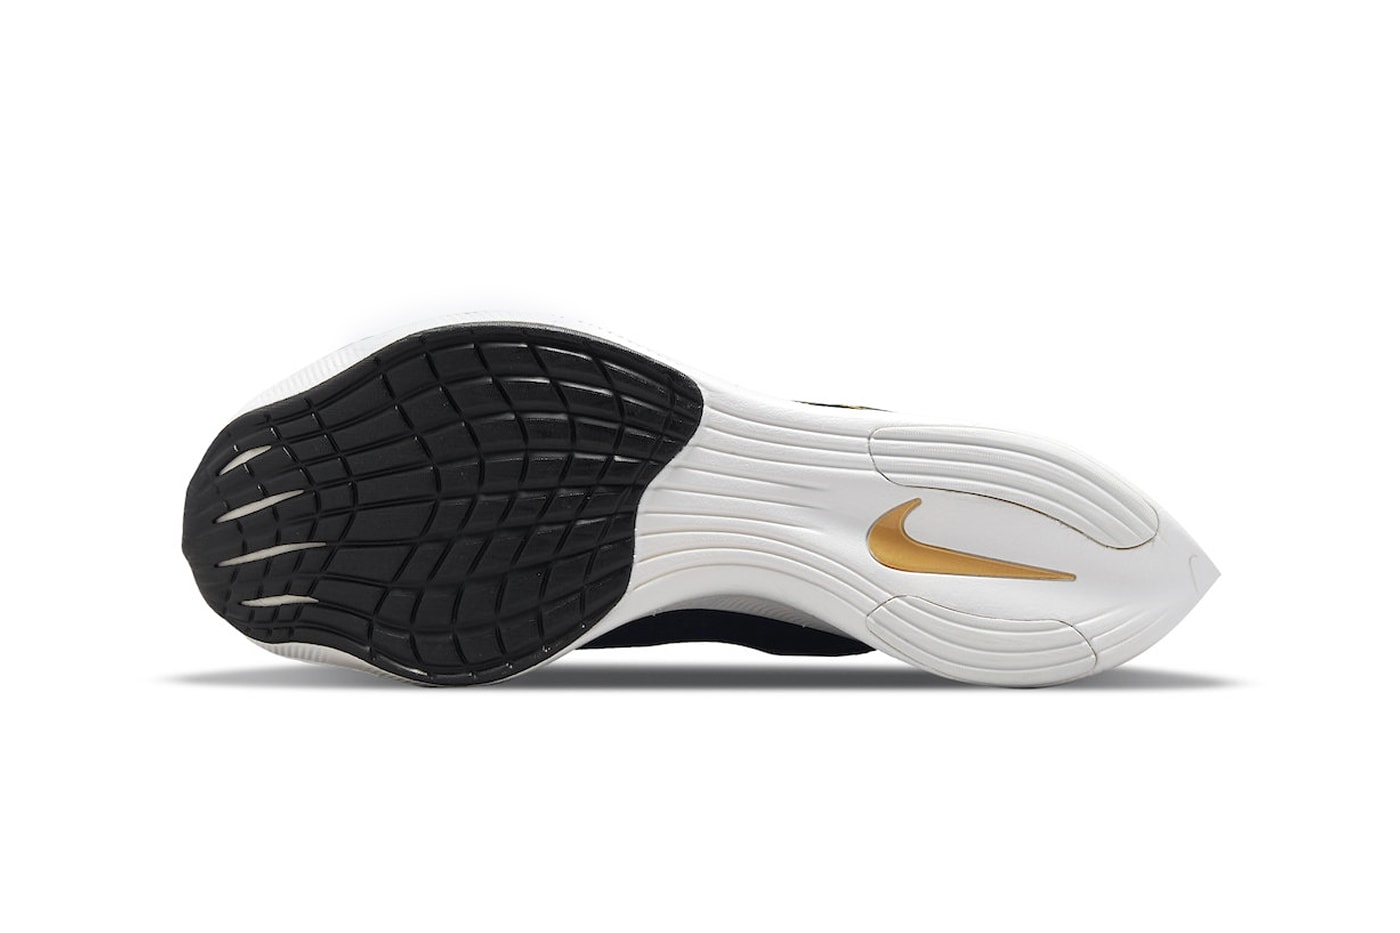 Nike Zoom VaporFly NEXT% in "Black Gold" Release Date sneaker footwear swoosh mesh black gold CU4111-001